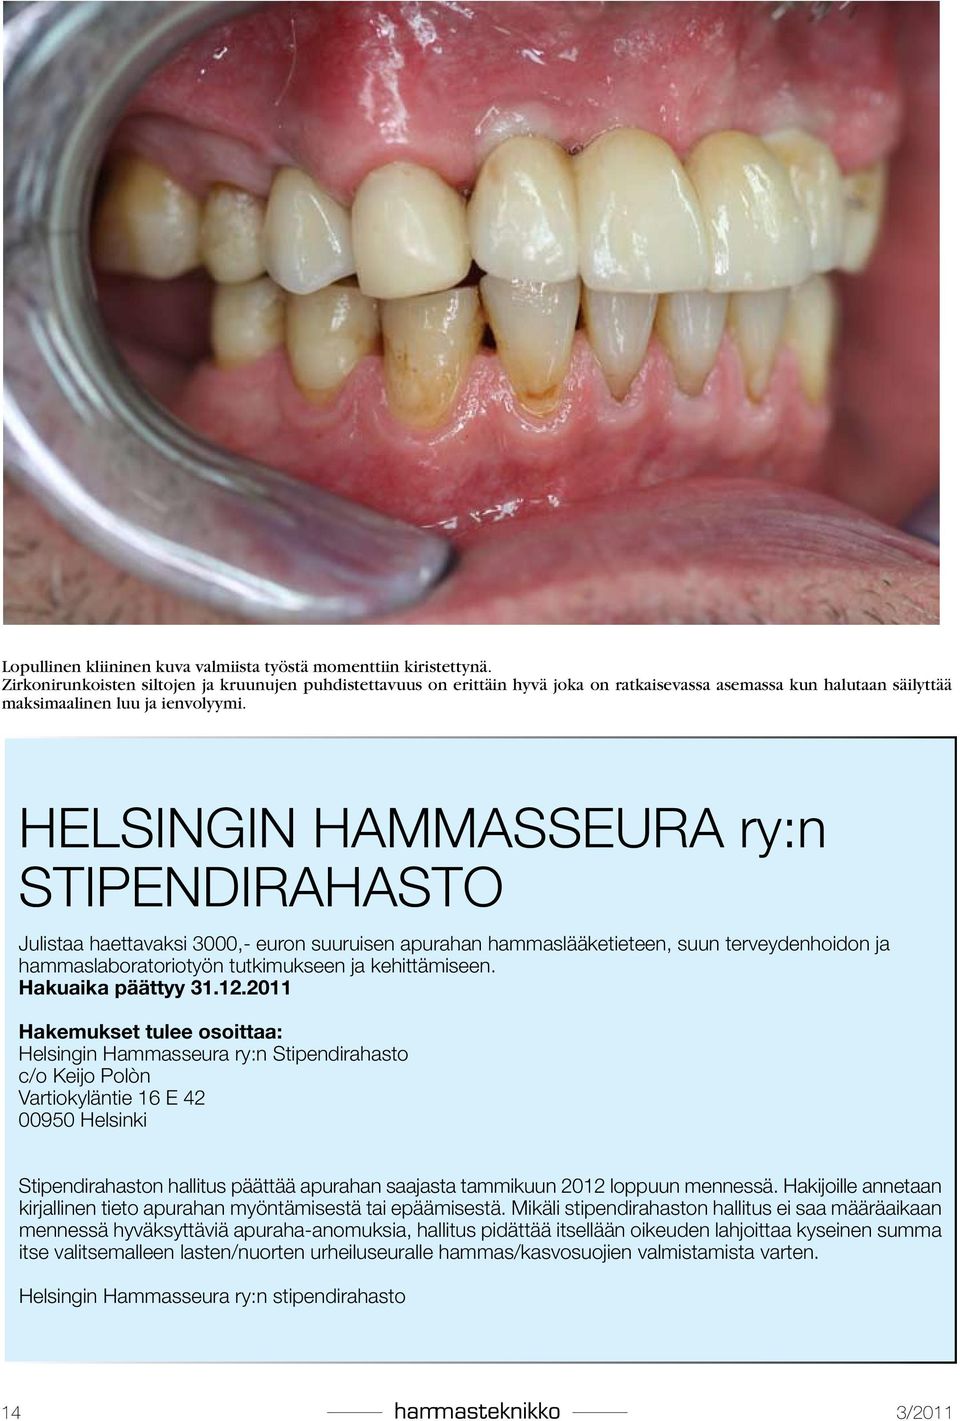 HELSINGIN HAMMASSEURA ry:n STIPENDIRAHASTO Julistaa haettavaksi 3000,- euron suuruisen apurahan hammaslääketieteen, suun terveydenhoidon ja hammaslaboratoriotyön tutkimukseen ja kehittämiseen.